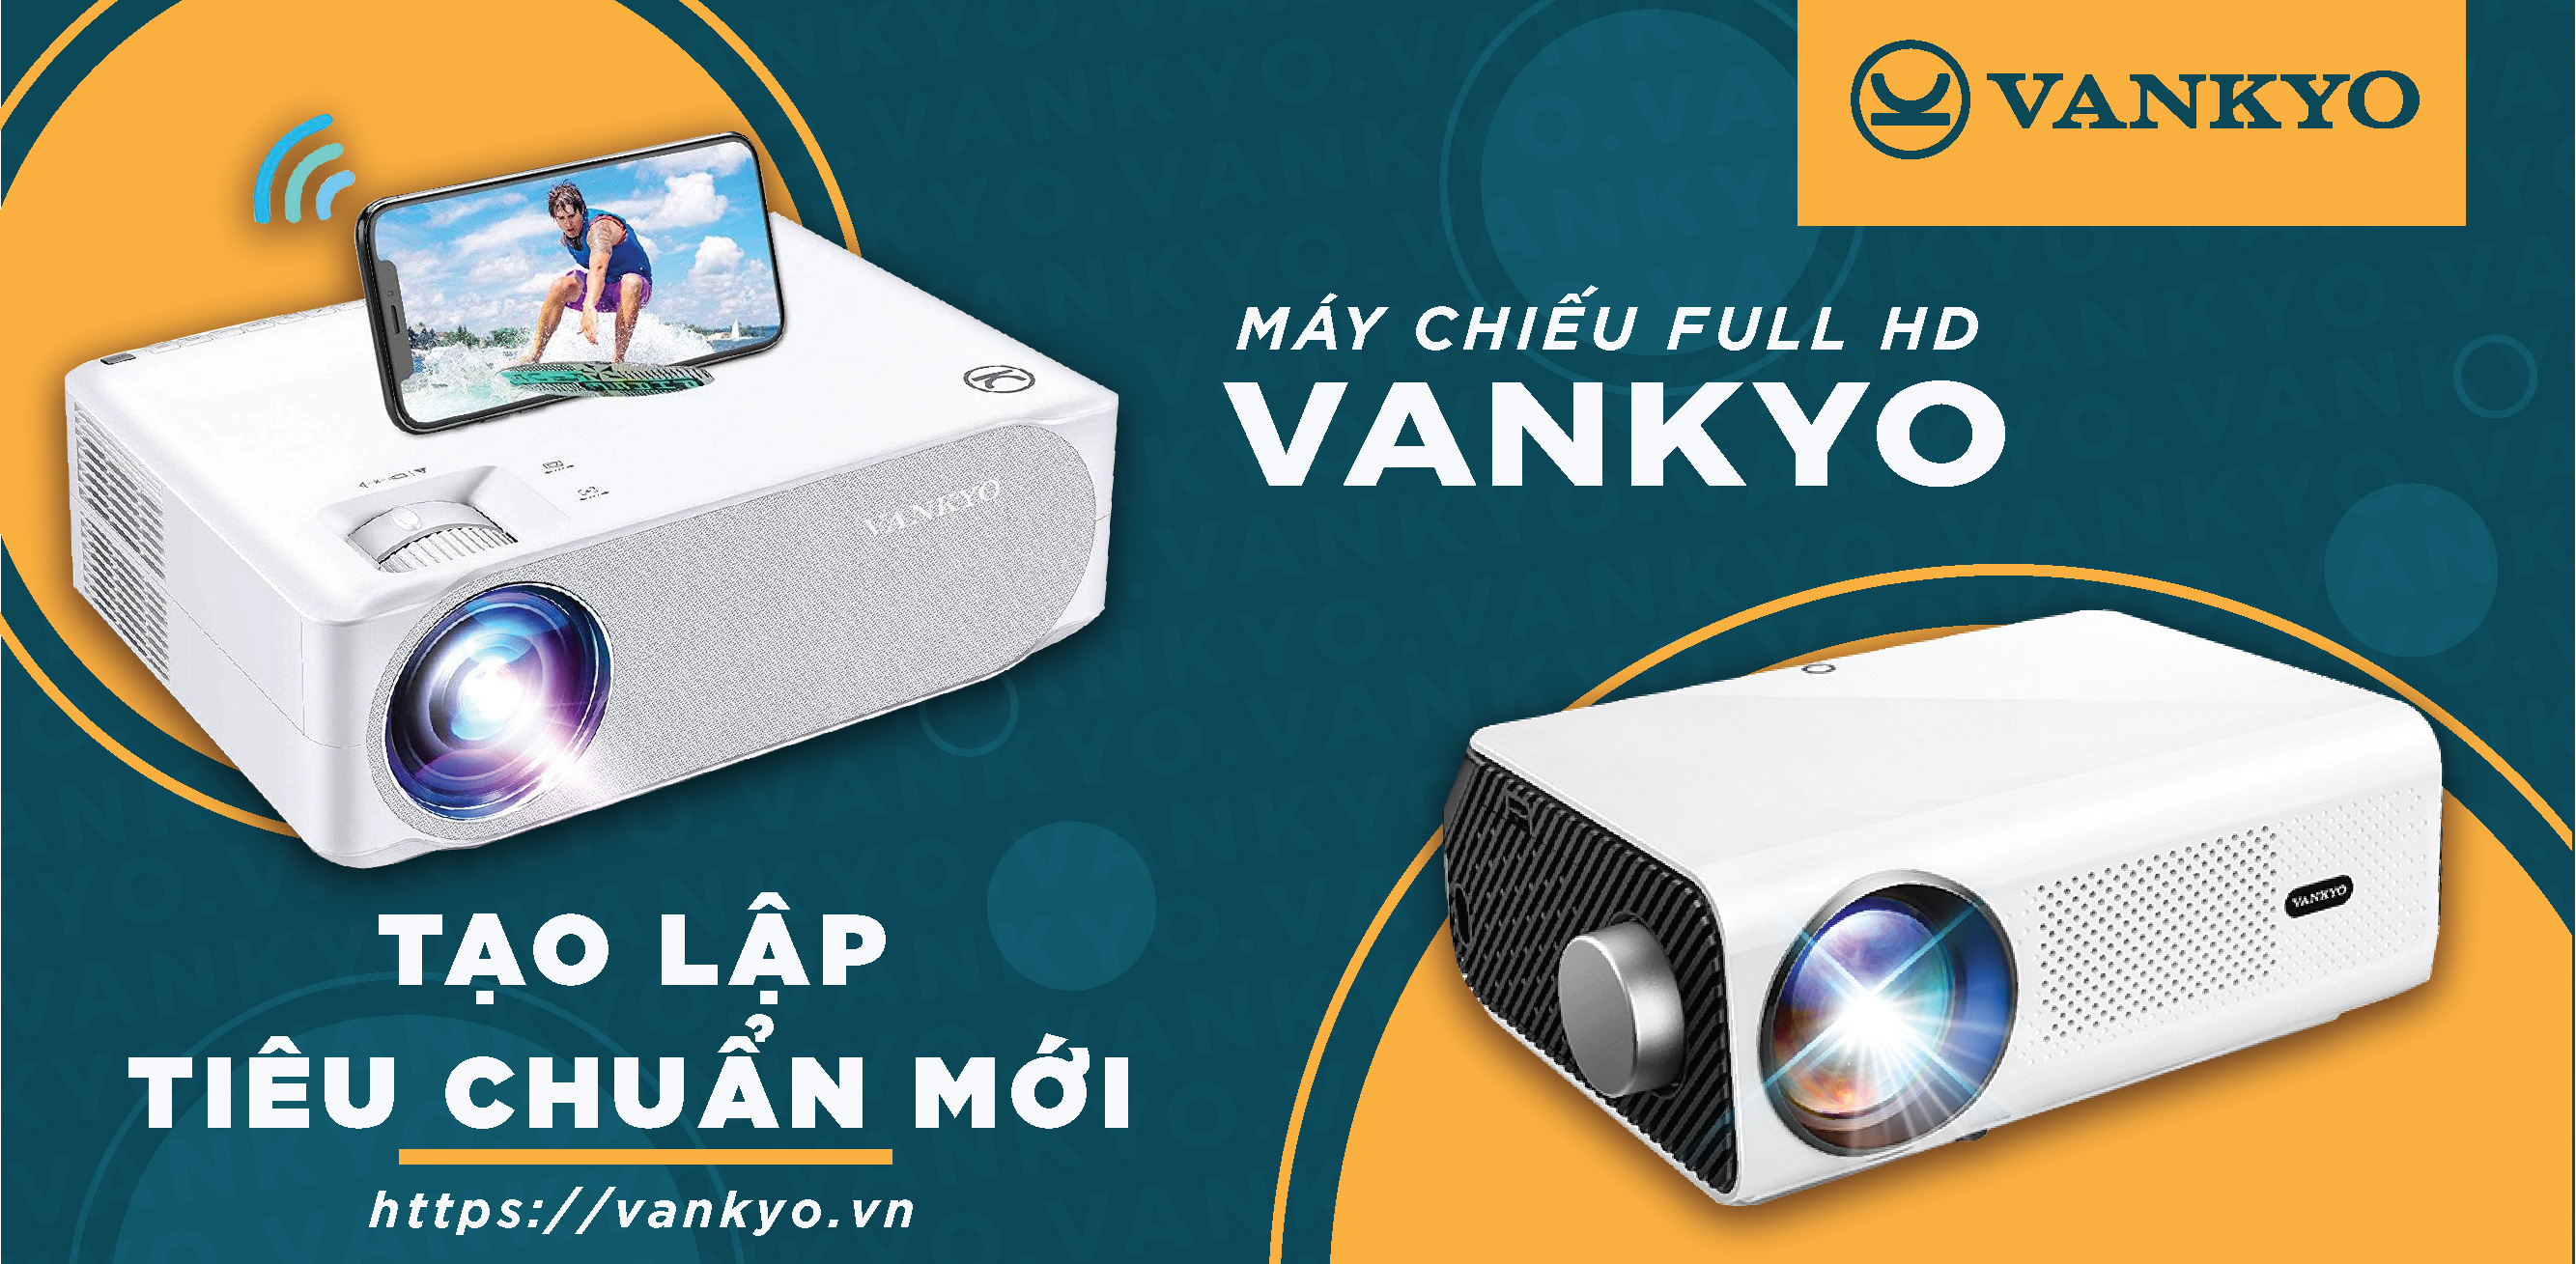 Máy chiếu mini Vankyo giá rẻ Full-HD 1080p hỗ trợ 4K kết nối điện thoại thông minh smartphone chiếu tới 250